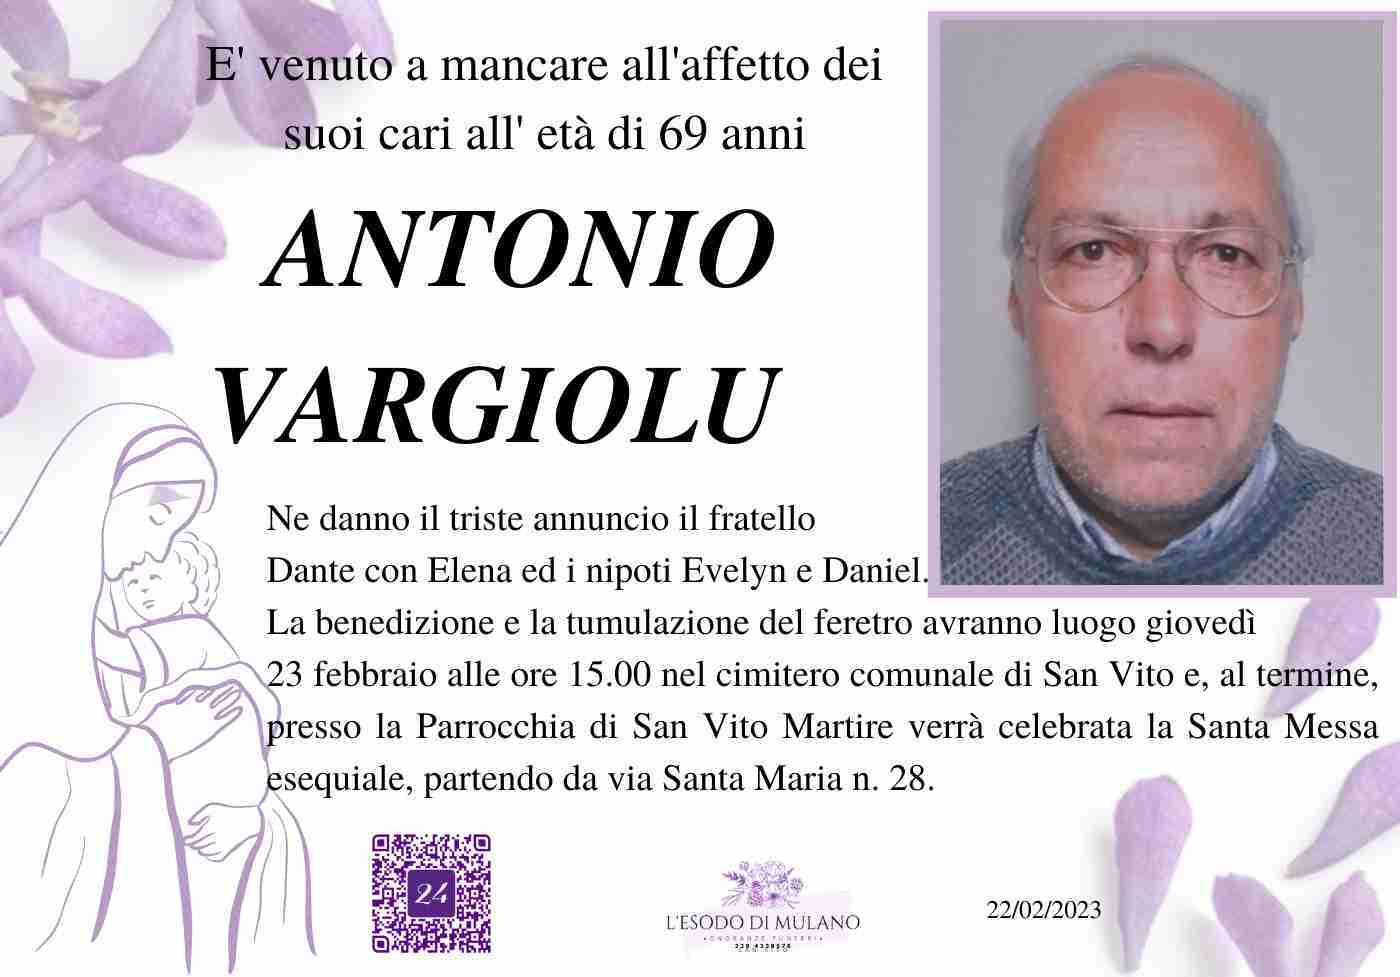 Antonio Vargiolu